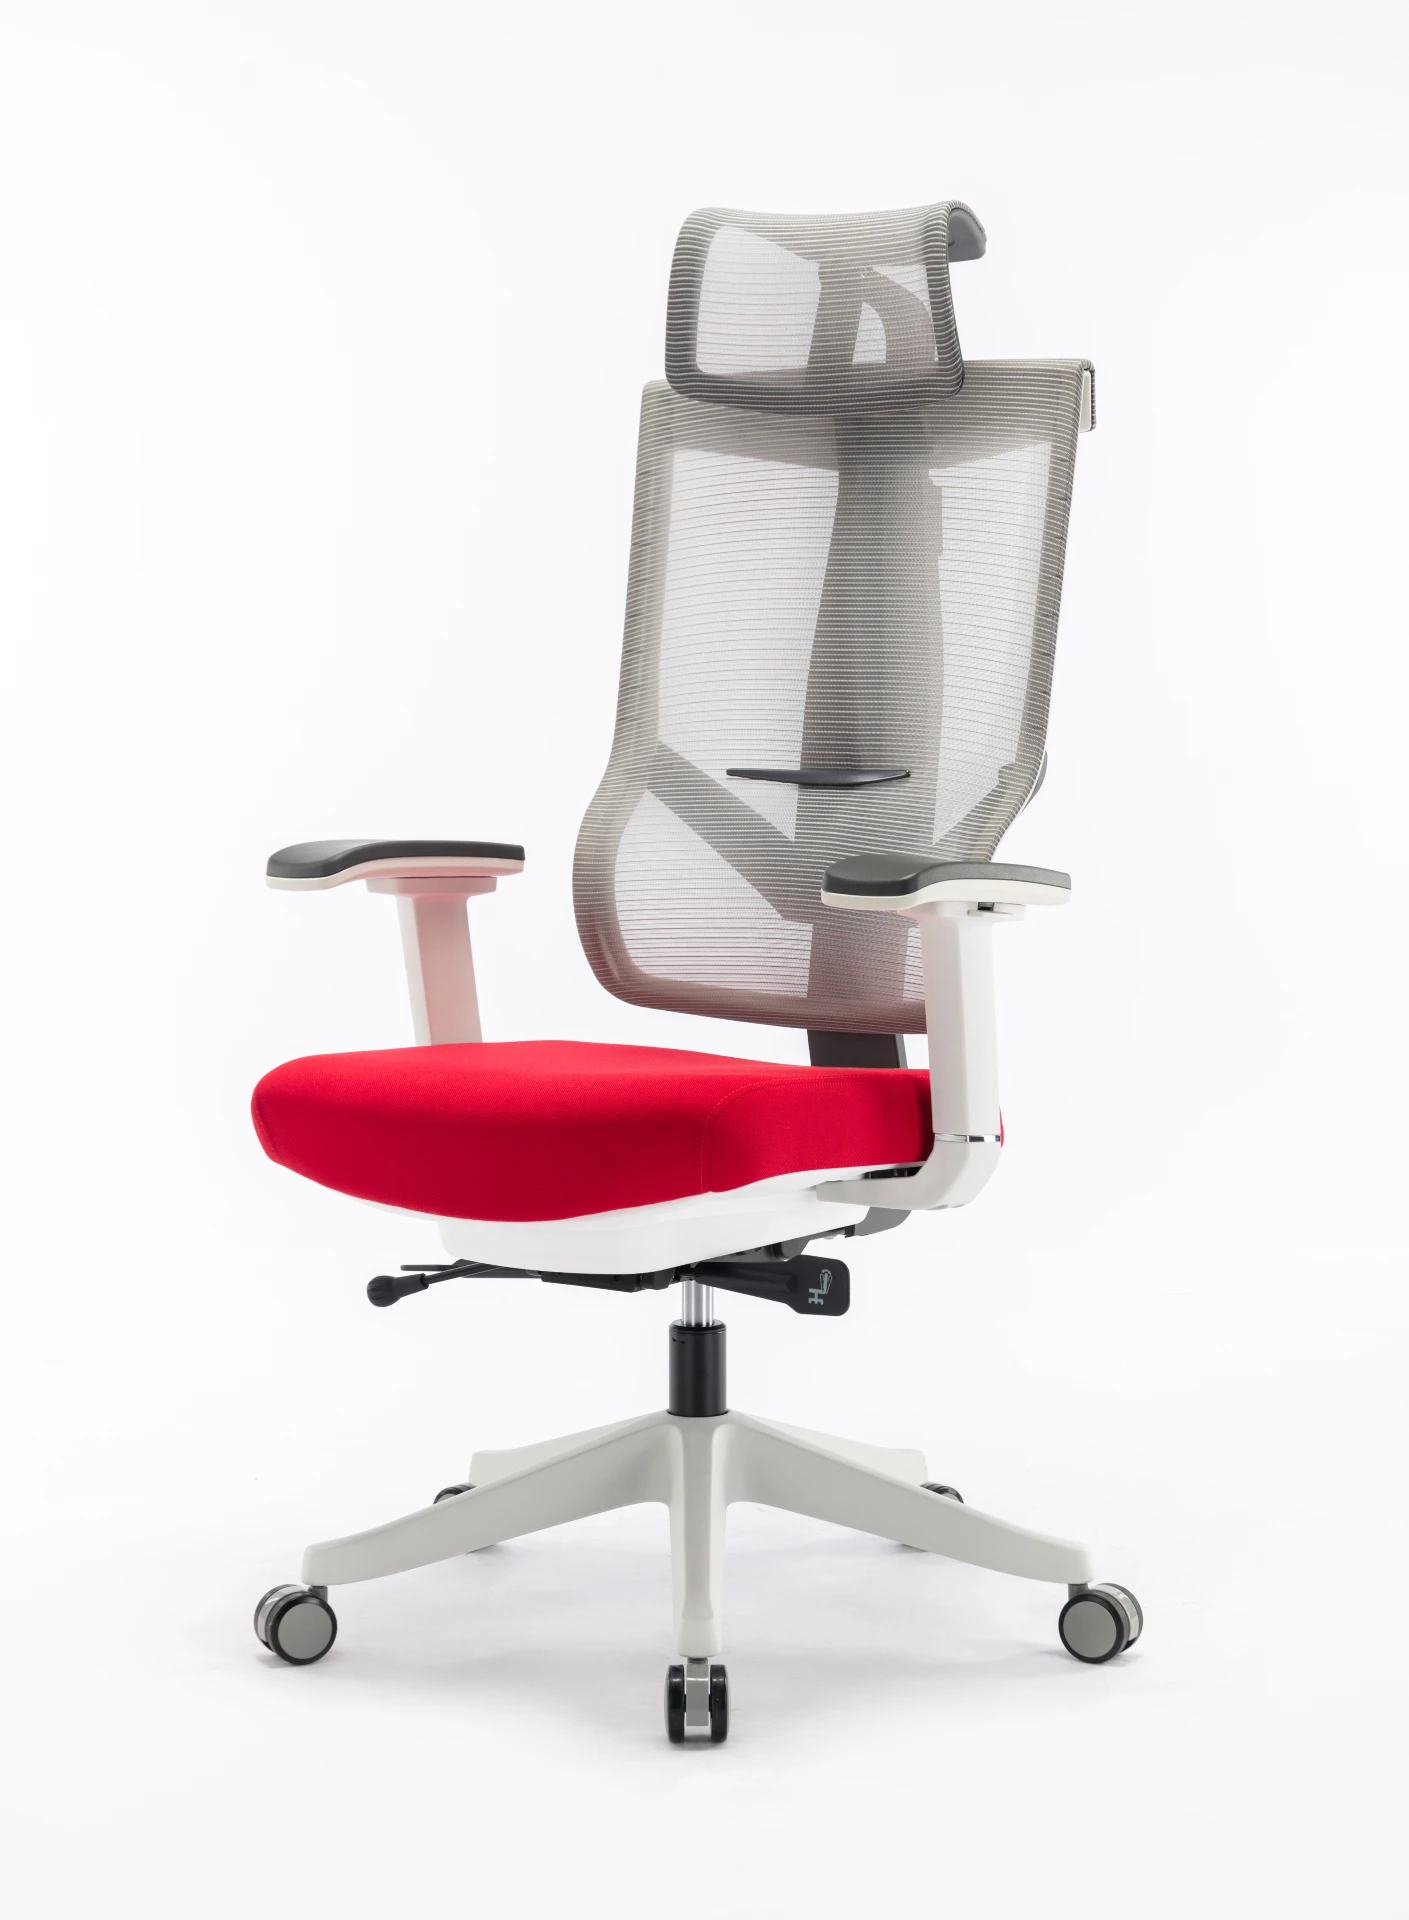 Aero chair ergonomic office chair premium navodesk chair